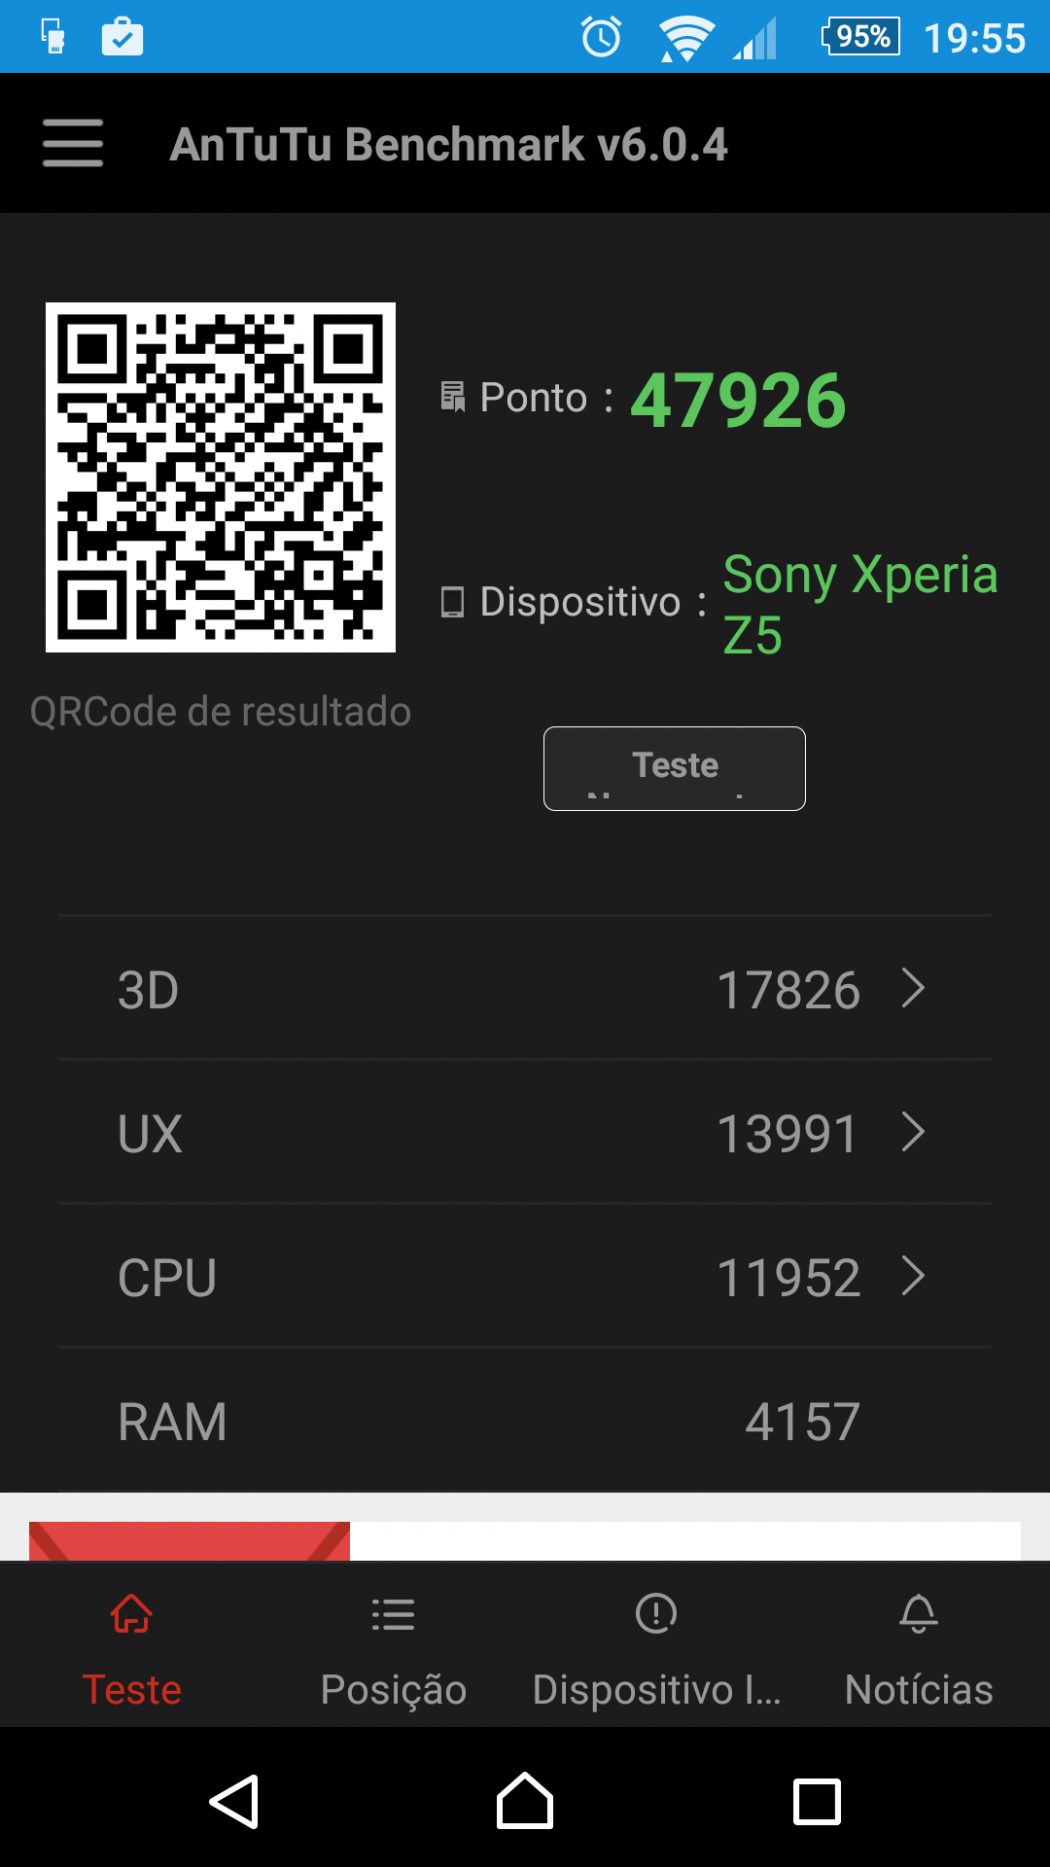 Testamos o Xperia Z5. Vem ver como é jogar com ele.